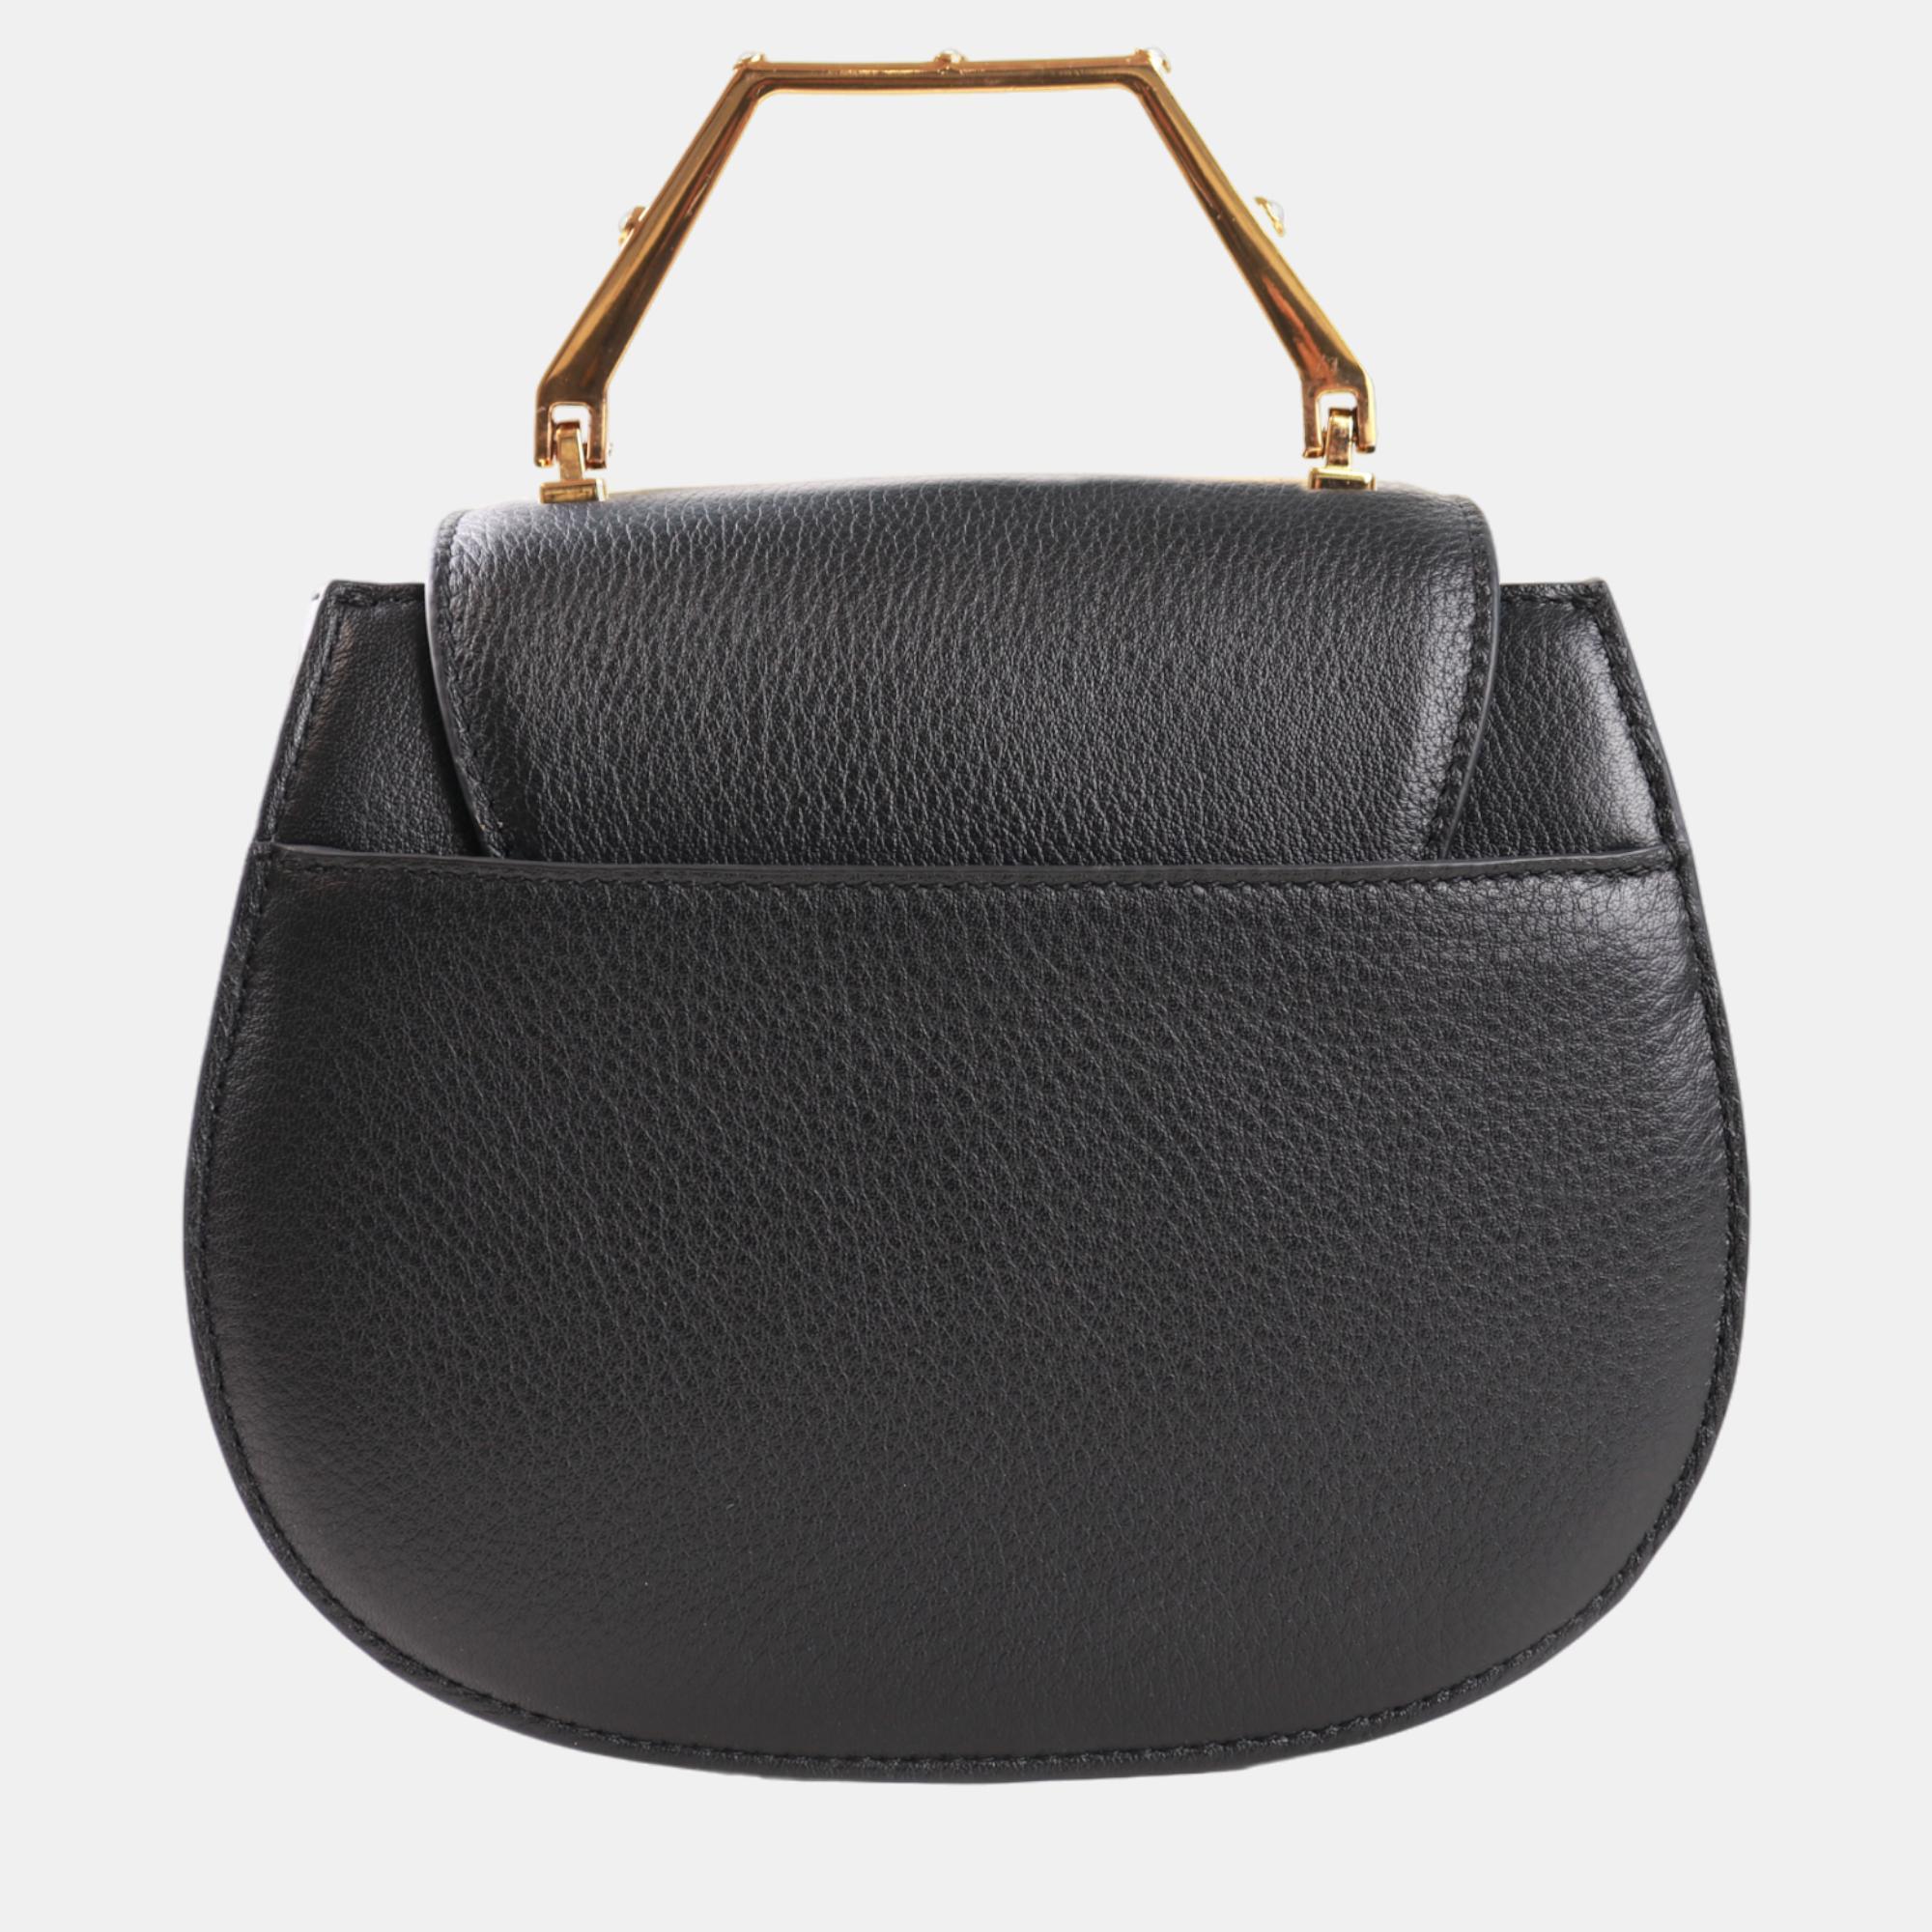 Charriol Black Leather MARIE OLGA Handbag